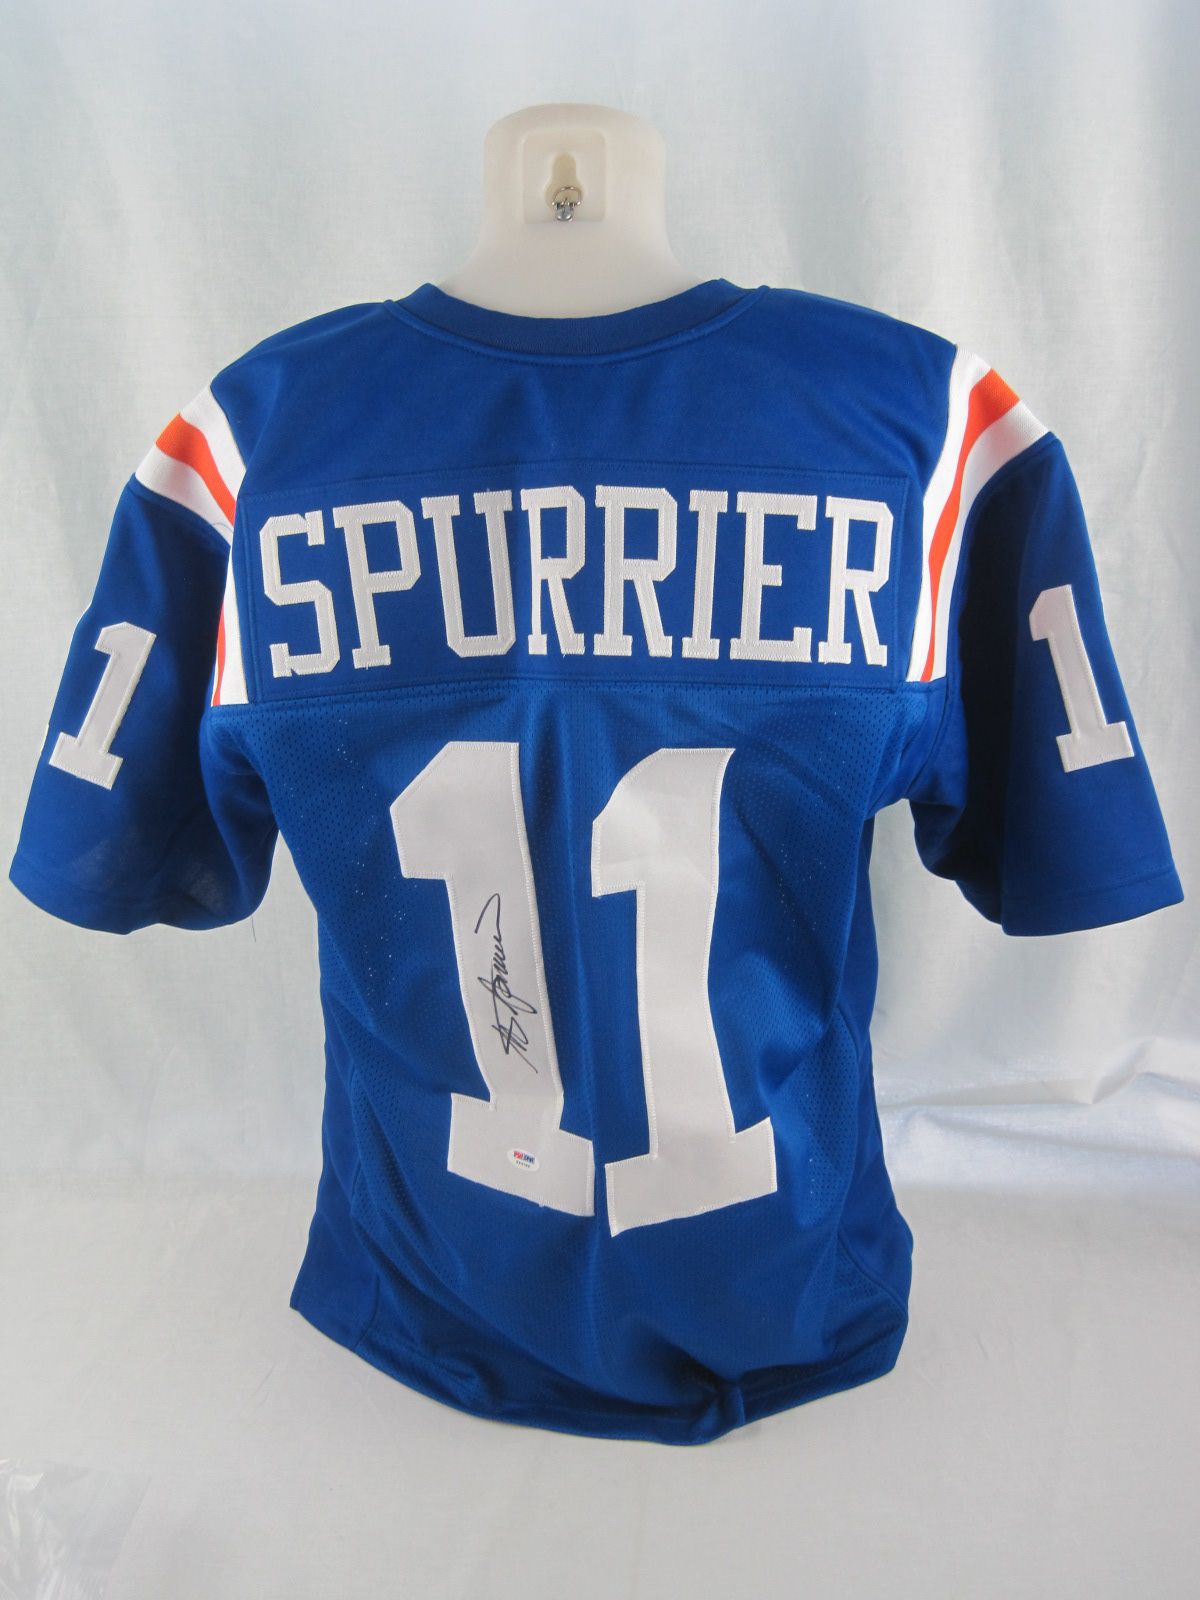 Steve Spurrier Autographed \u0026 Inscribed 